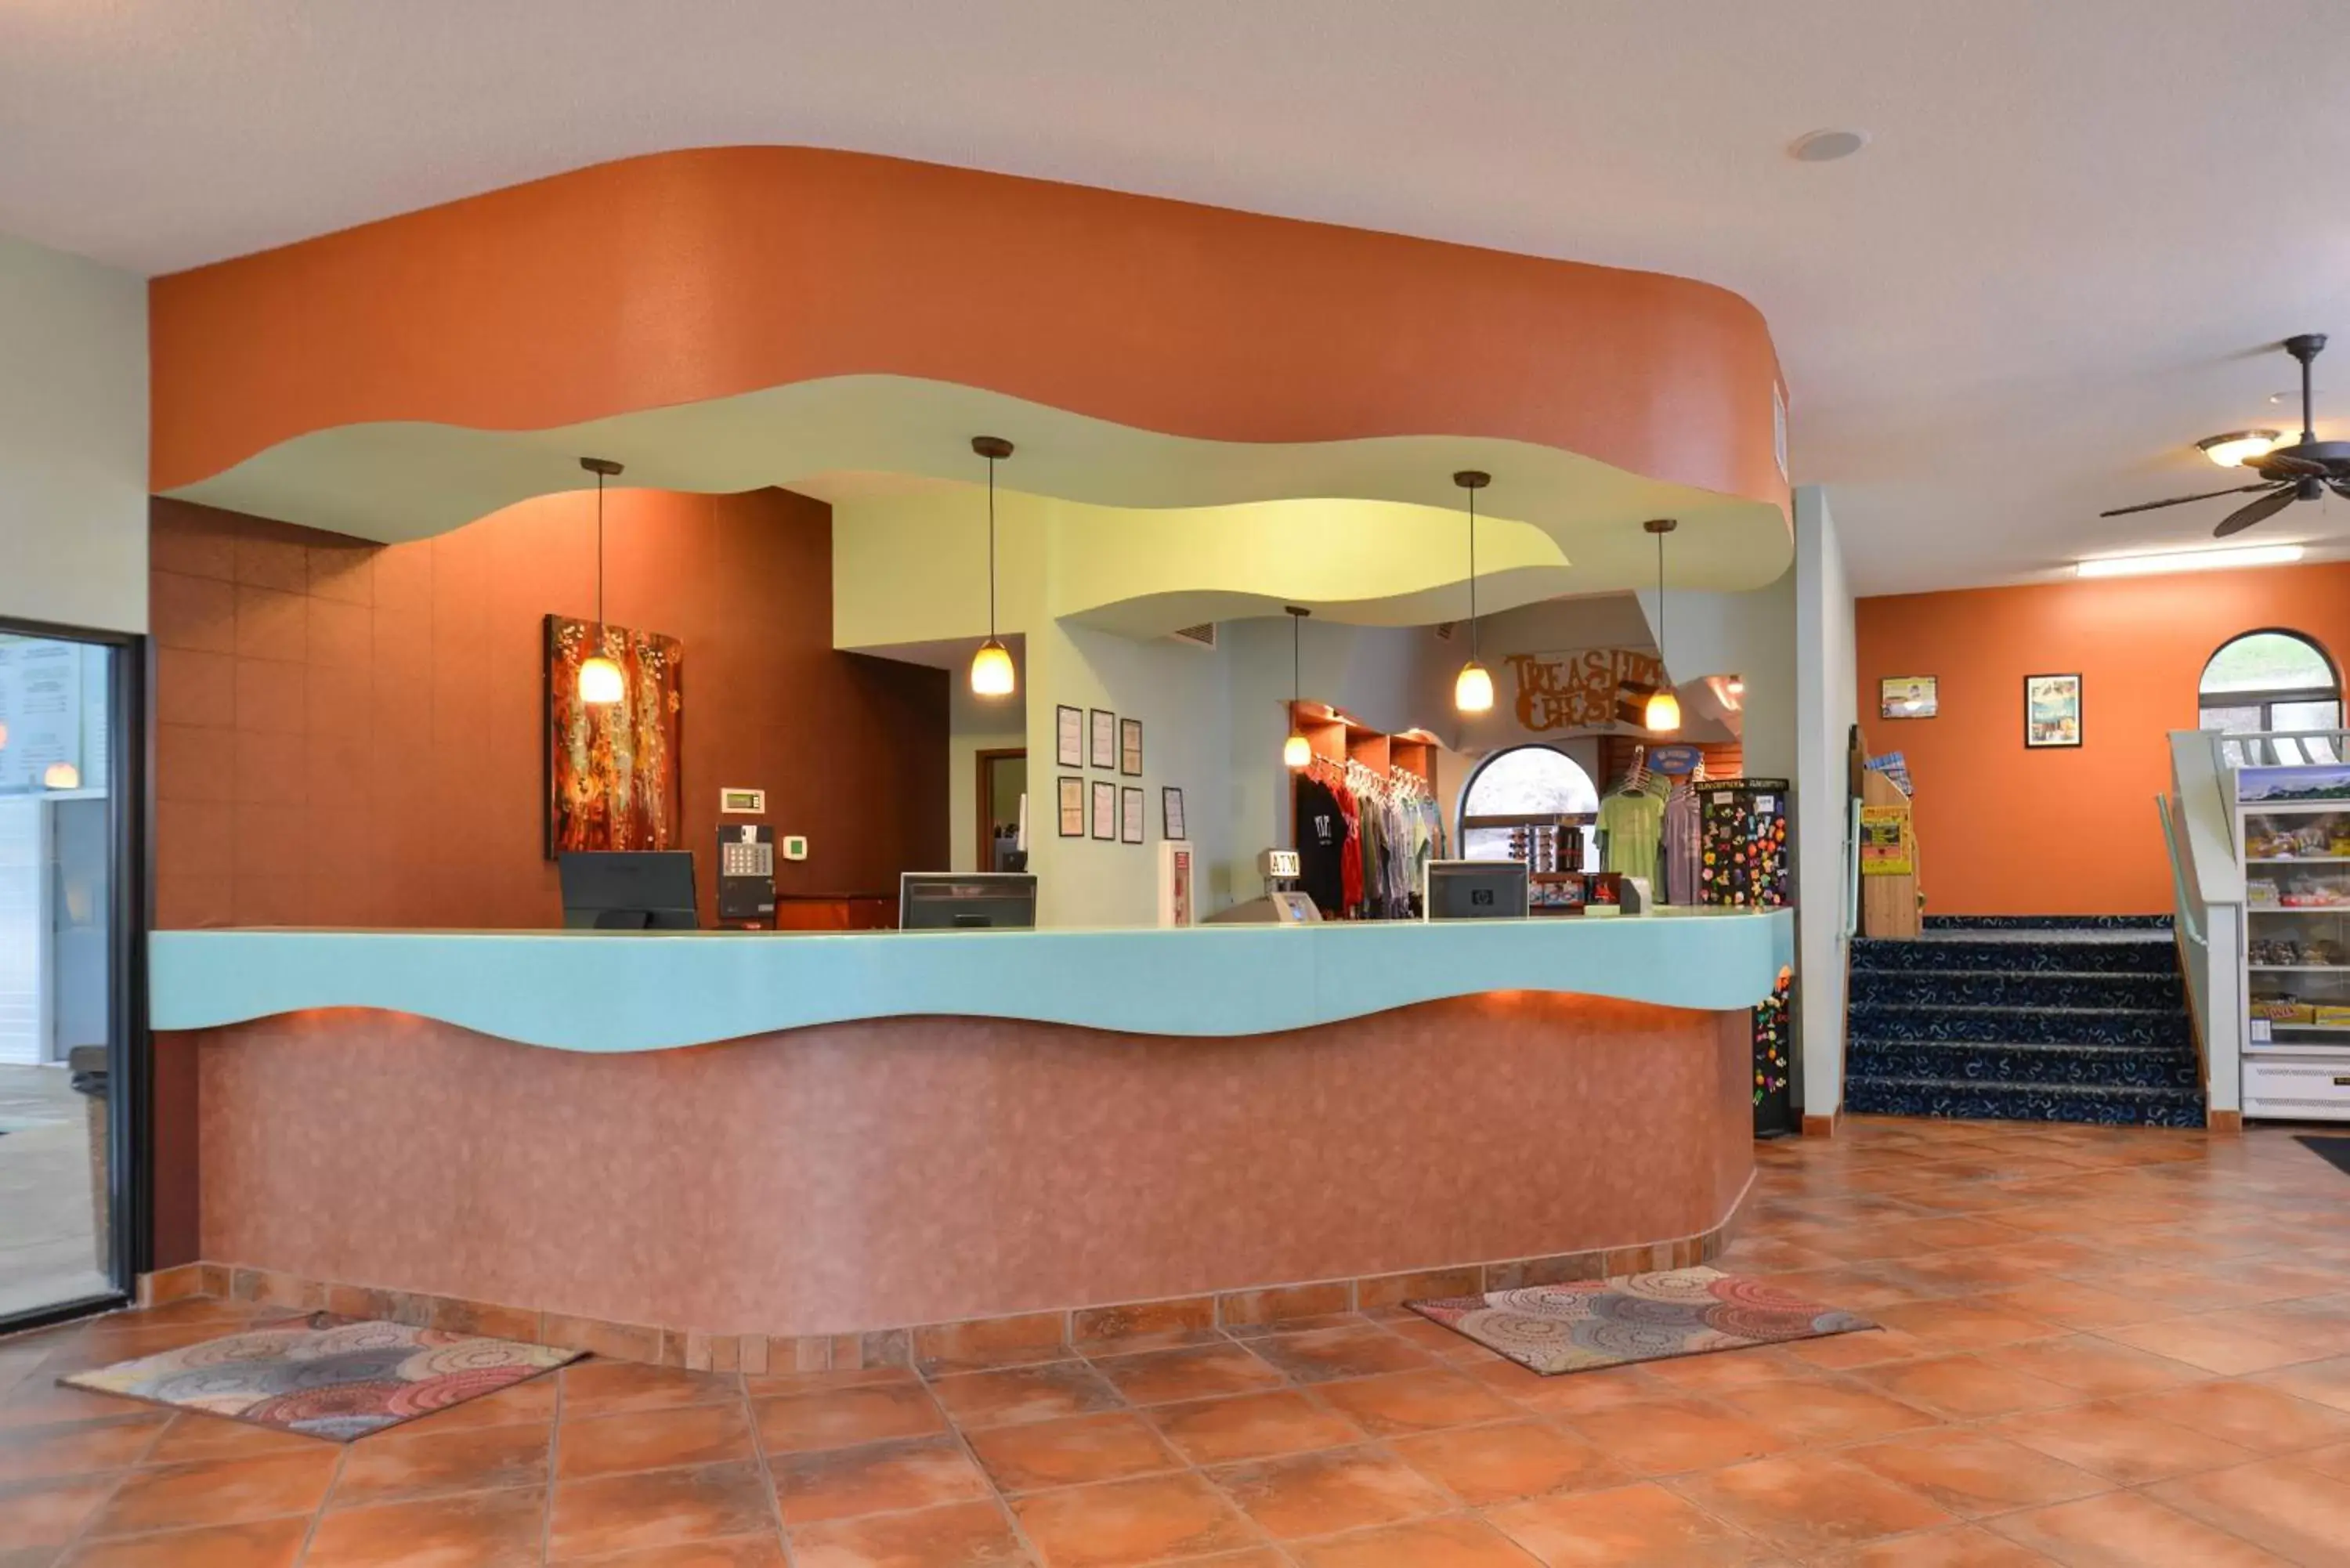 Lobby or reception, Lobby/Reception in Atlantis Family Waterpark Hotel